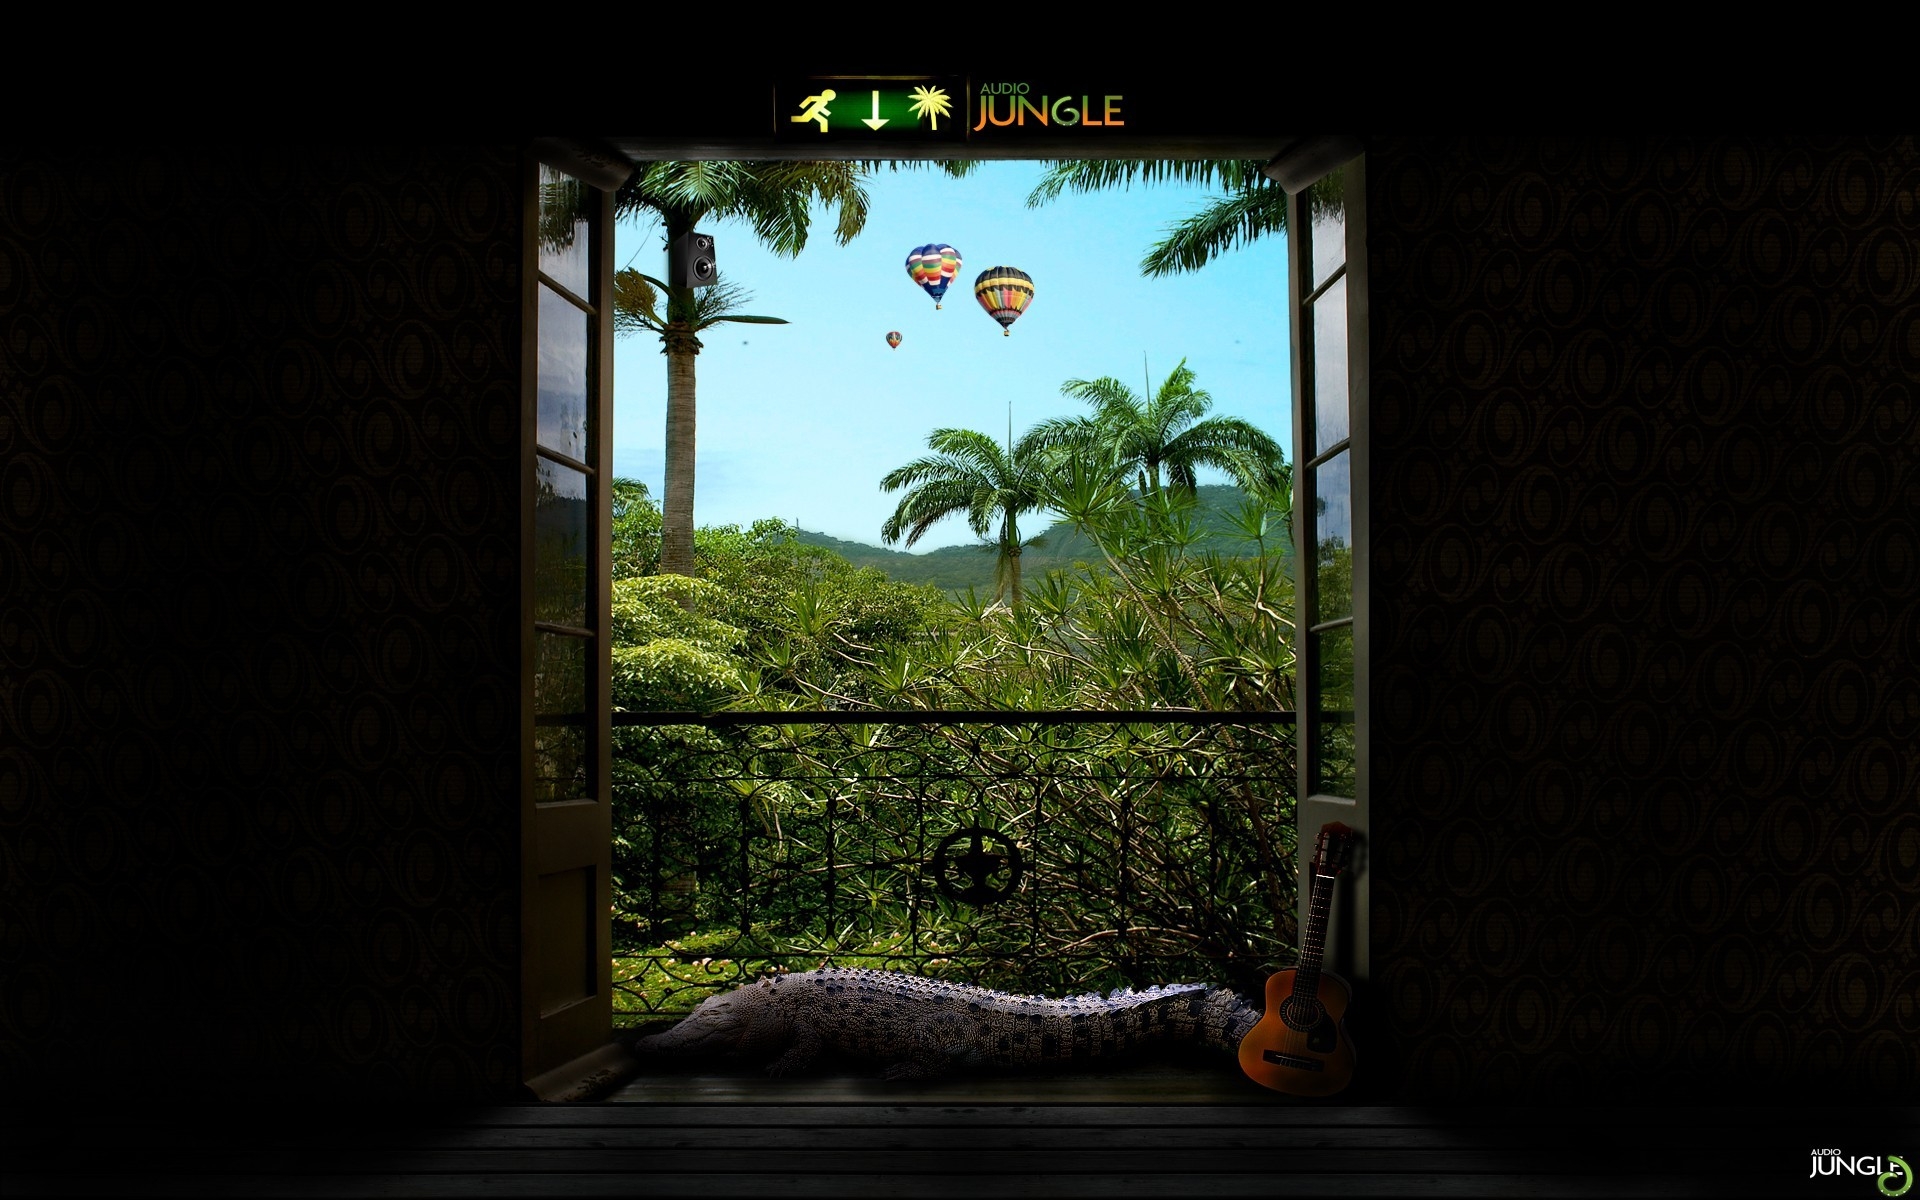 Картинки балкона, джунгли, гитара, крокодила, выхода из фото и обои на рабочий стол